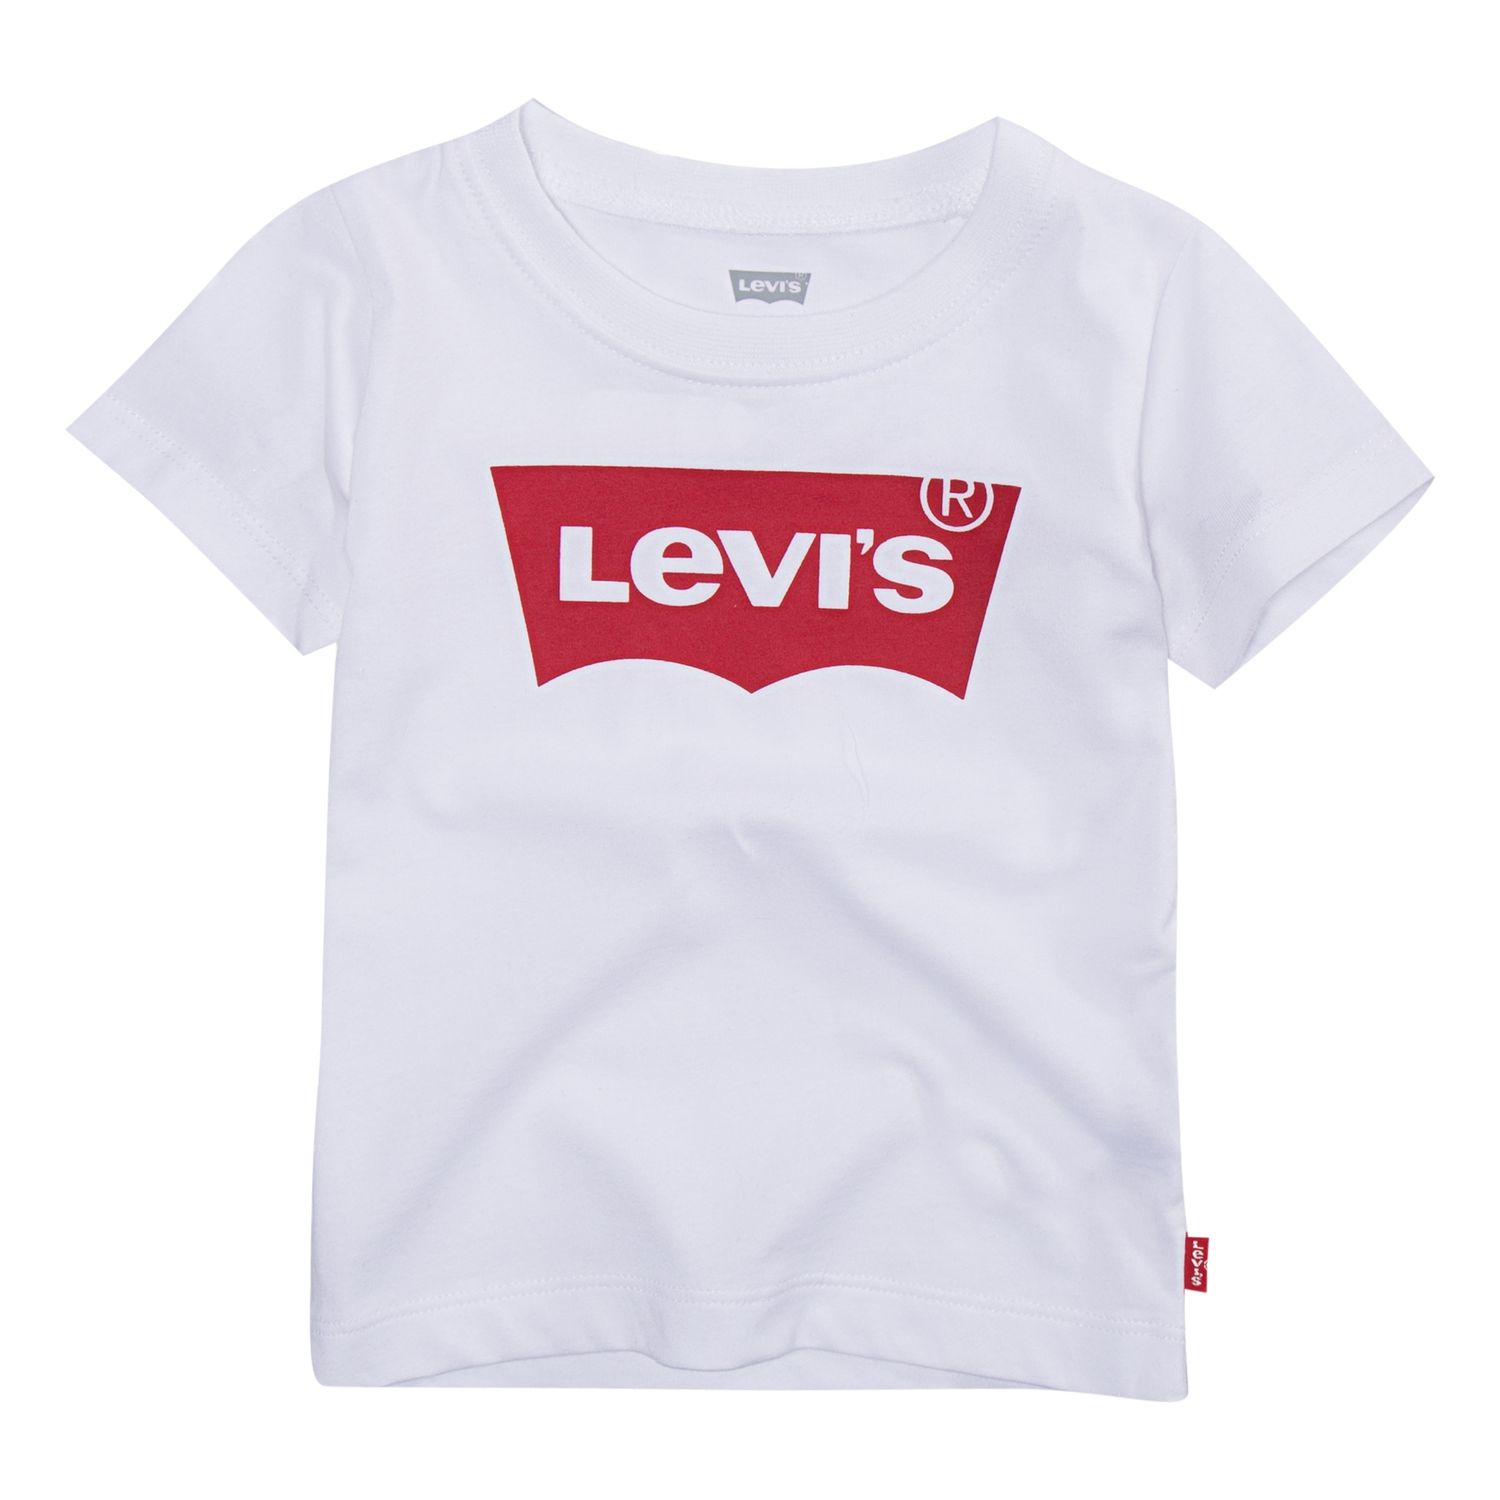 levis logo t shirt women's